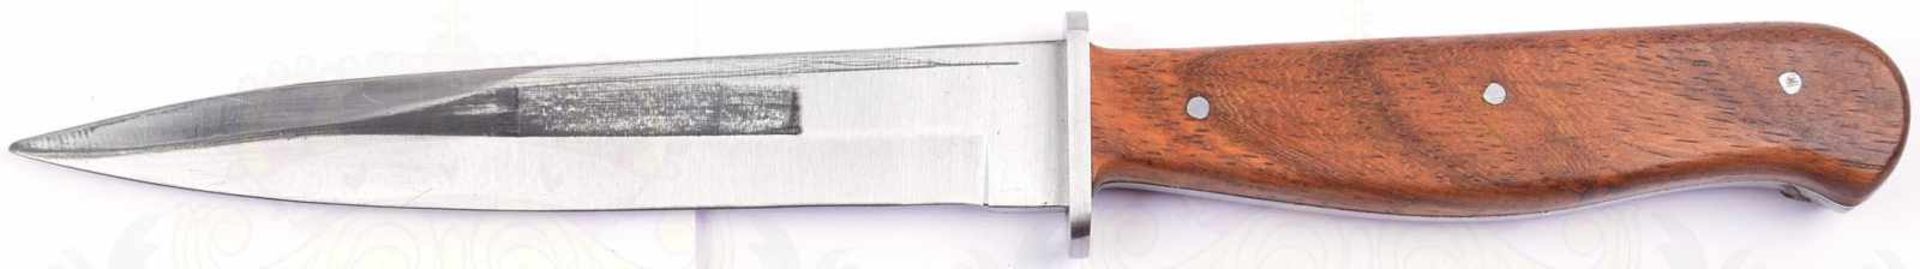 KAMPFMESSER, Sammleranfertigung, blanke Klinge, in der Spitze zweischneidig, L. 14 cm, genietete - Bild 2 aus 2